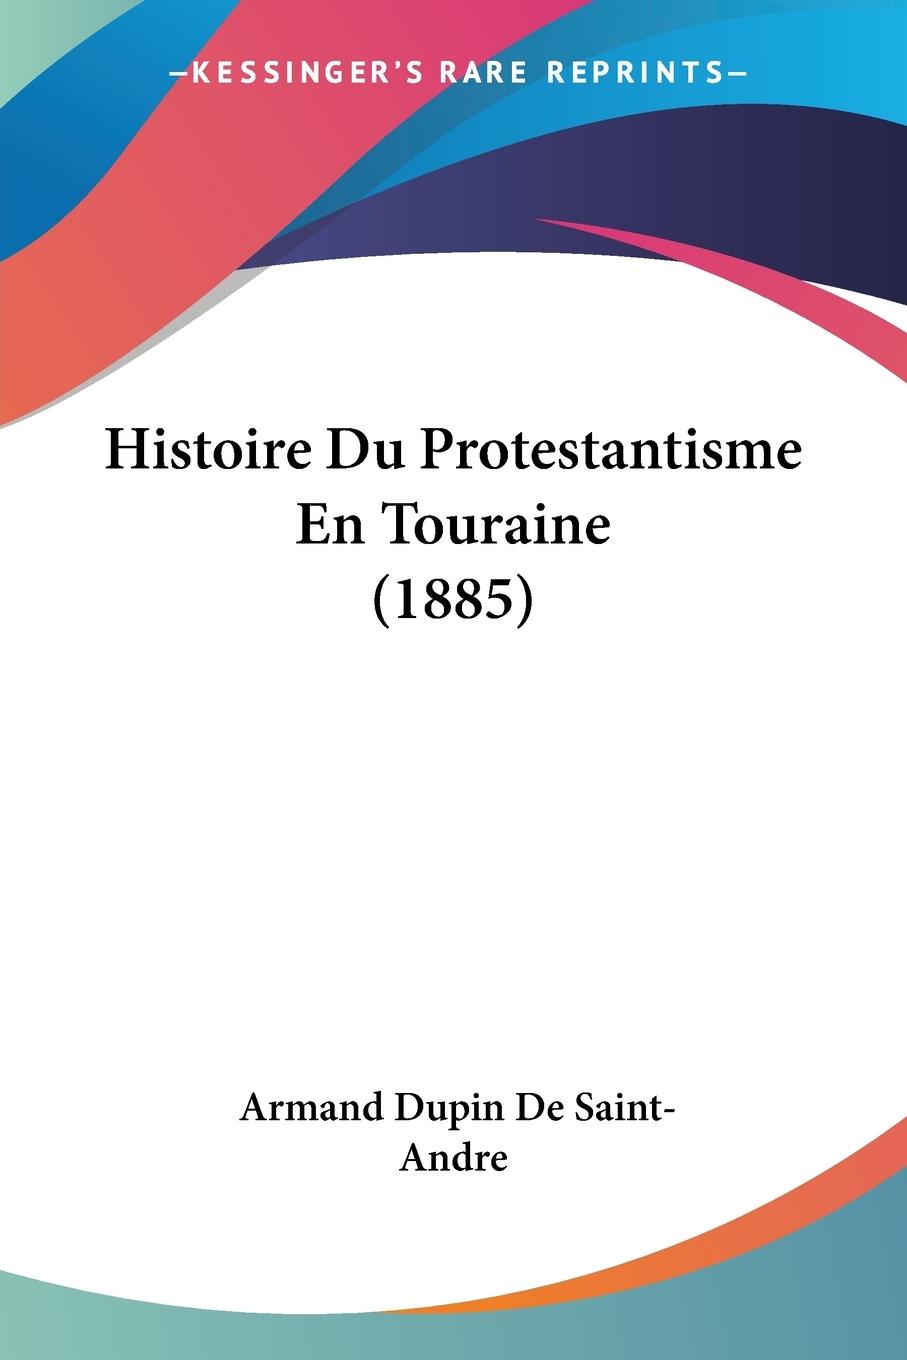 Histoire Du Protestantisme En Touraine (1885) - De Saint-Andre, Armand Dupin